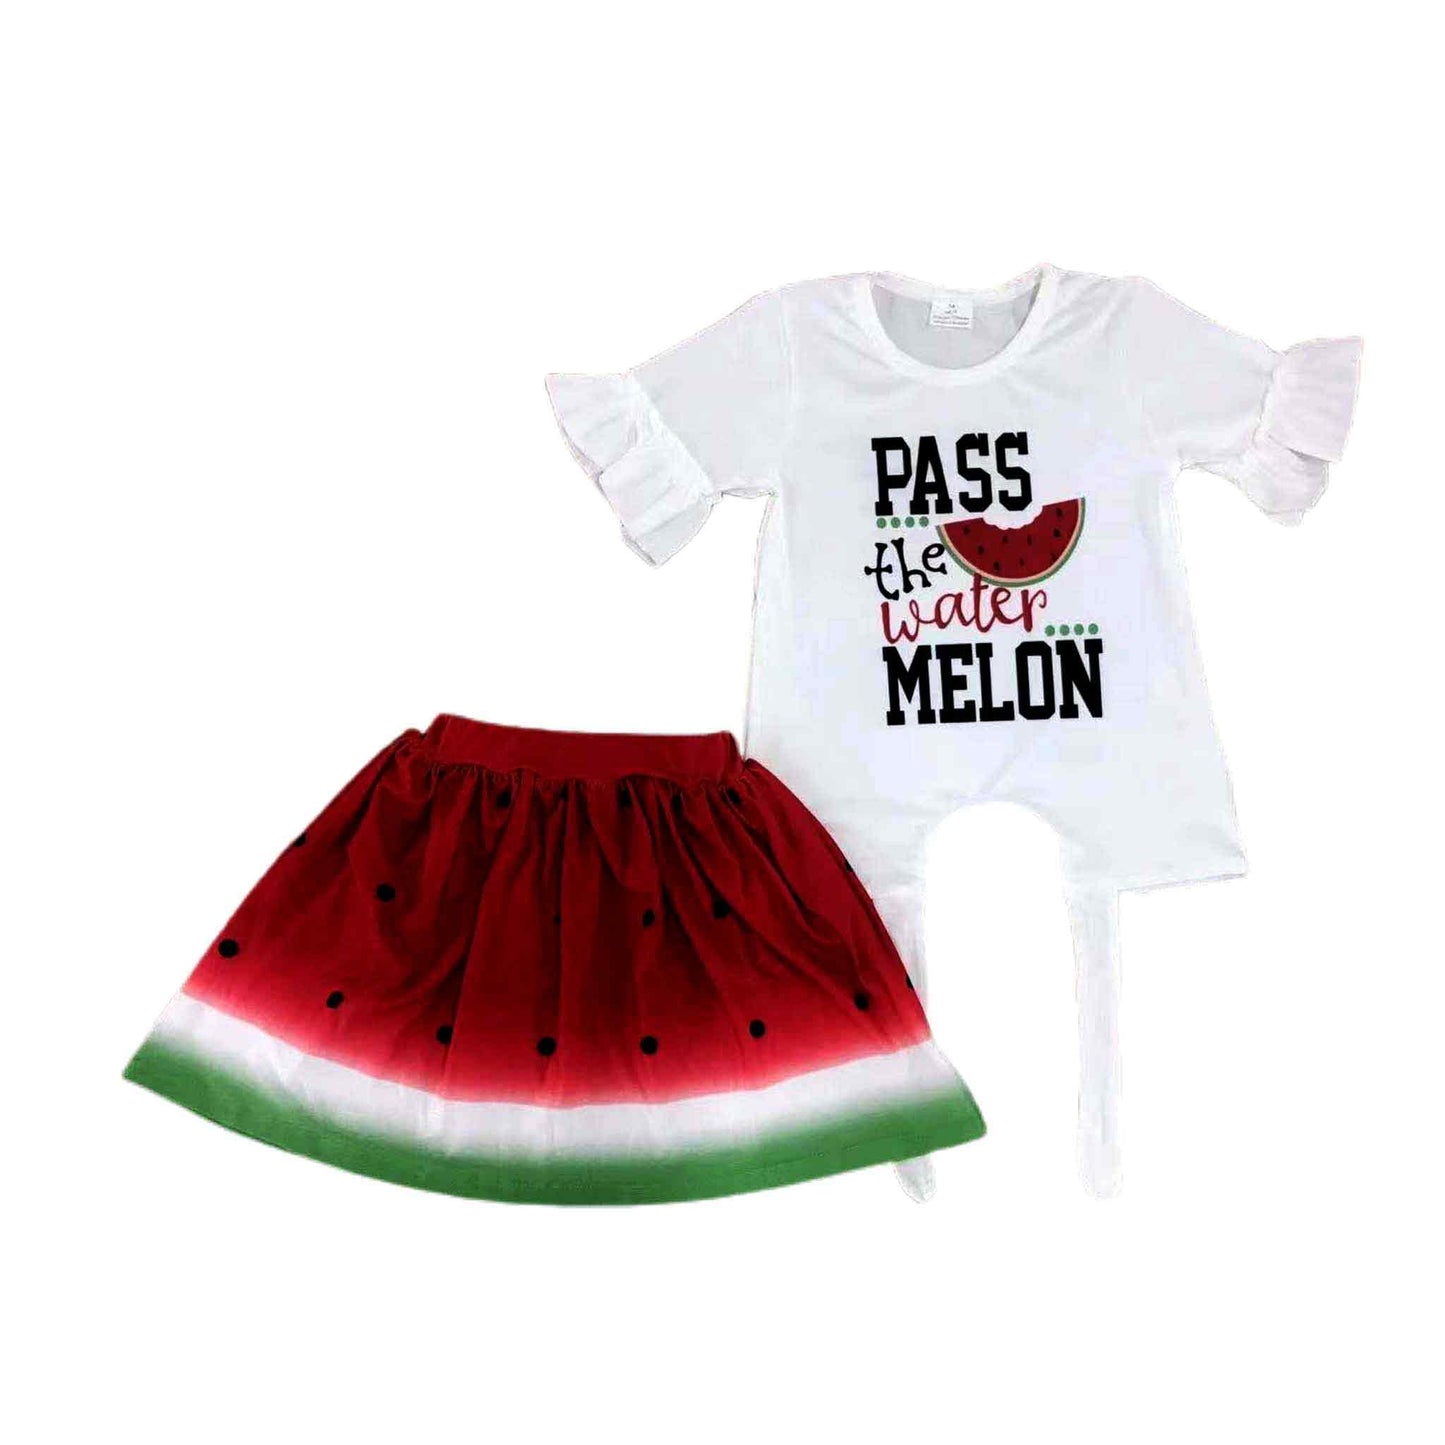 Pass the Watermelon Skirt Set